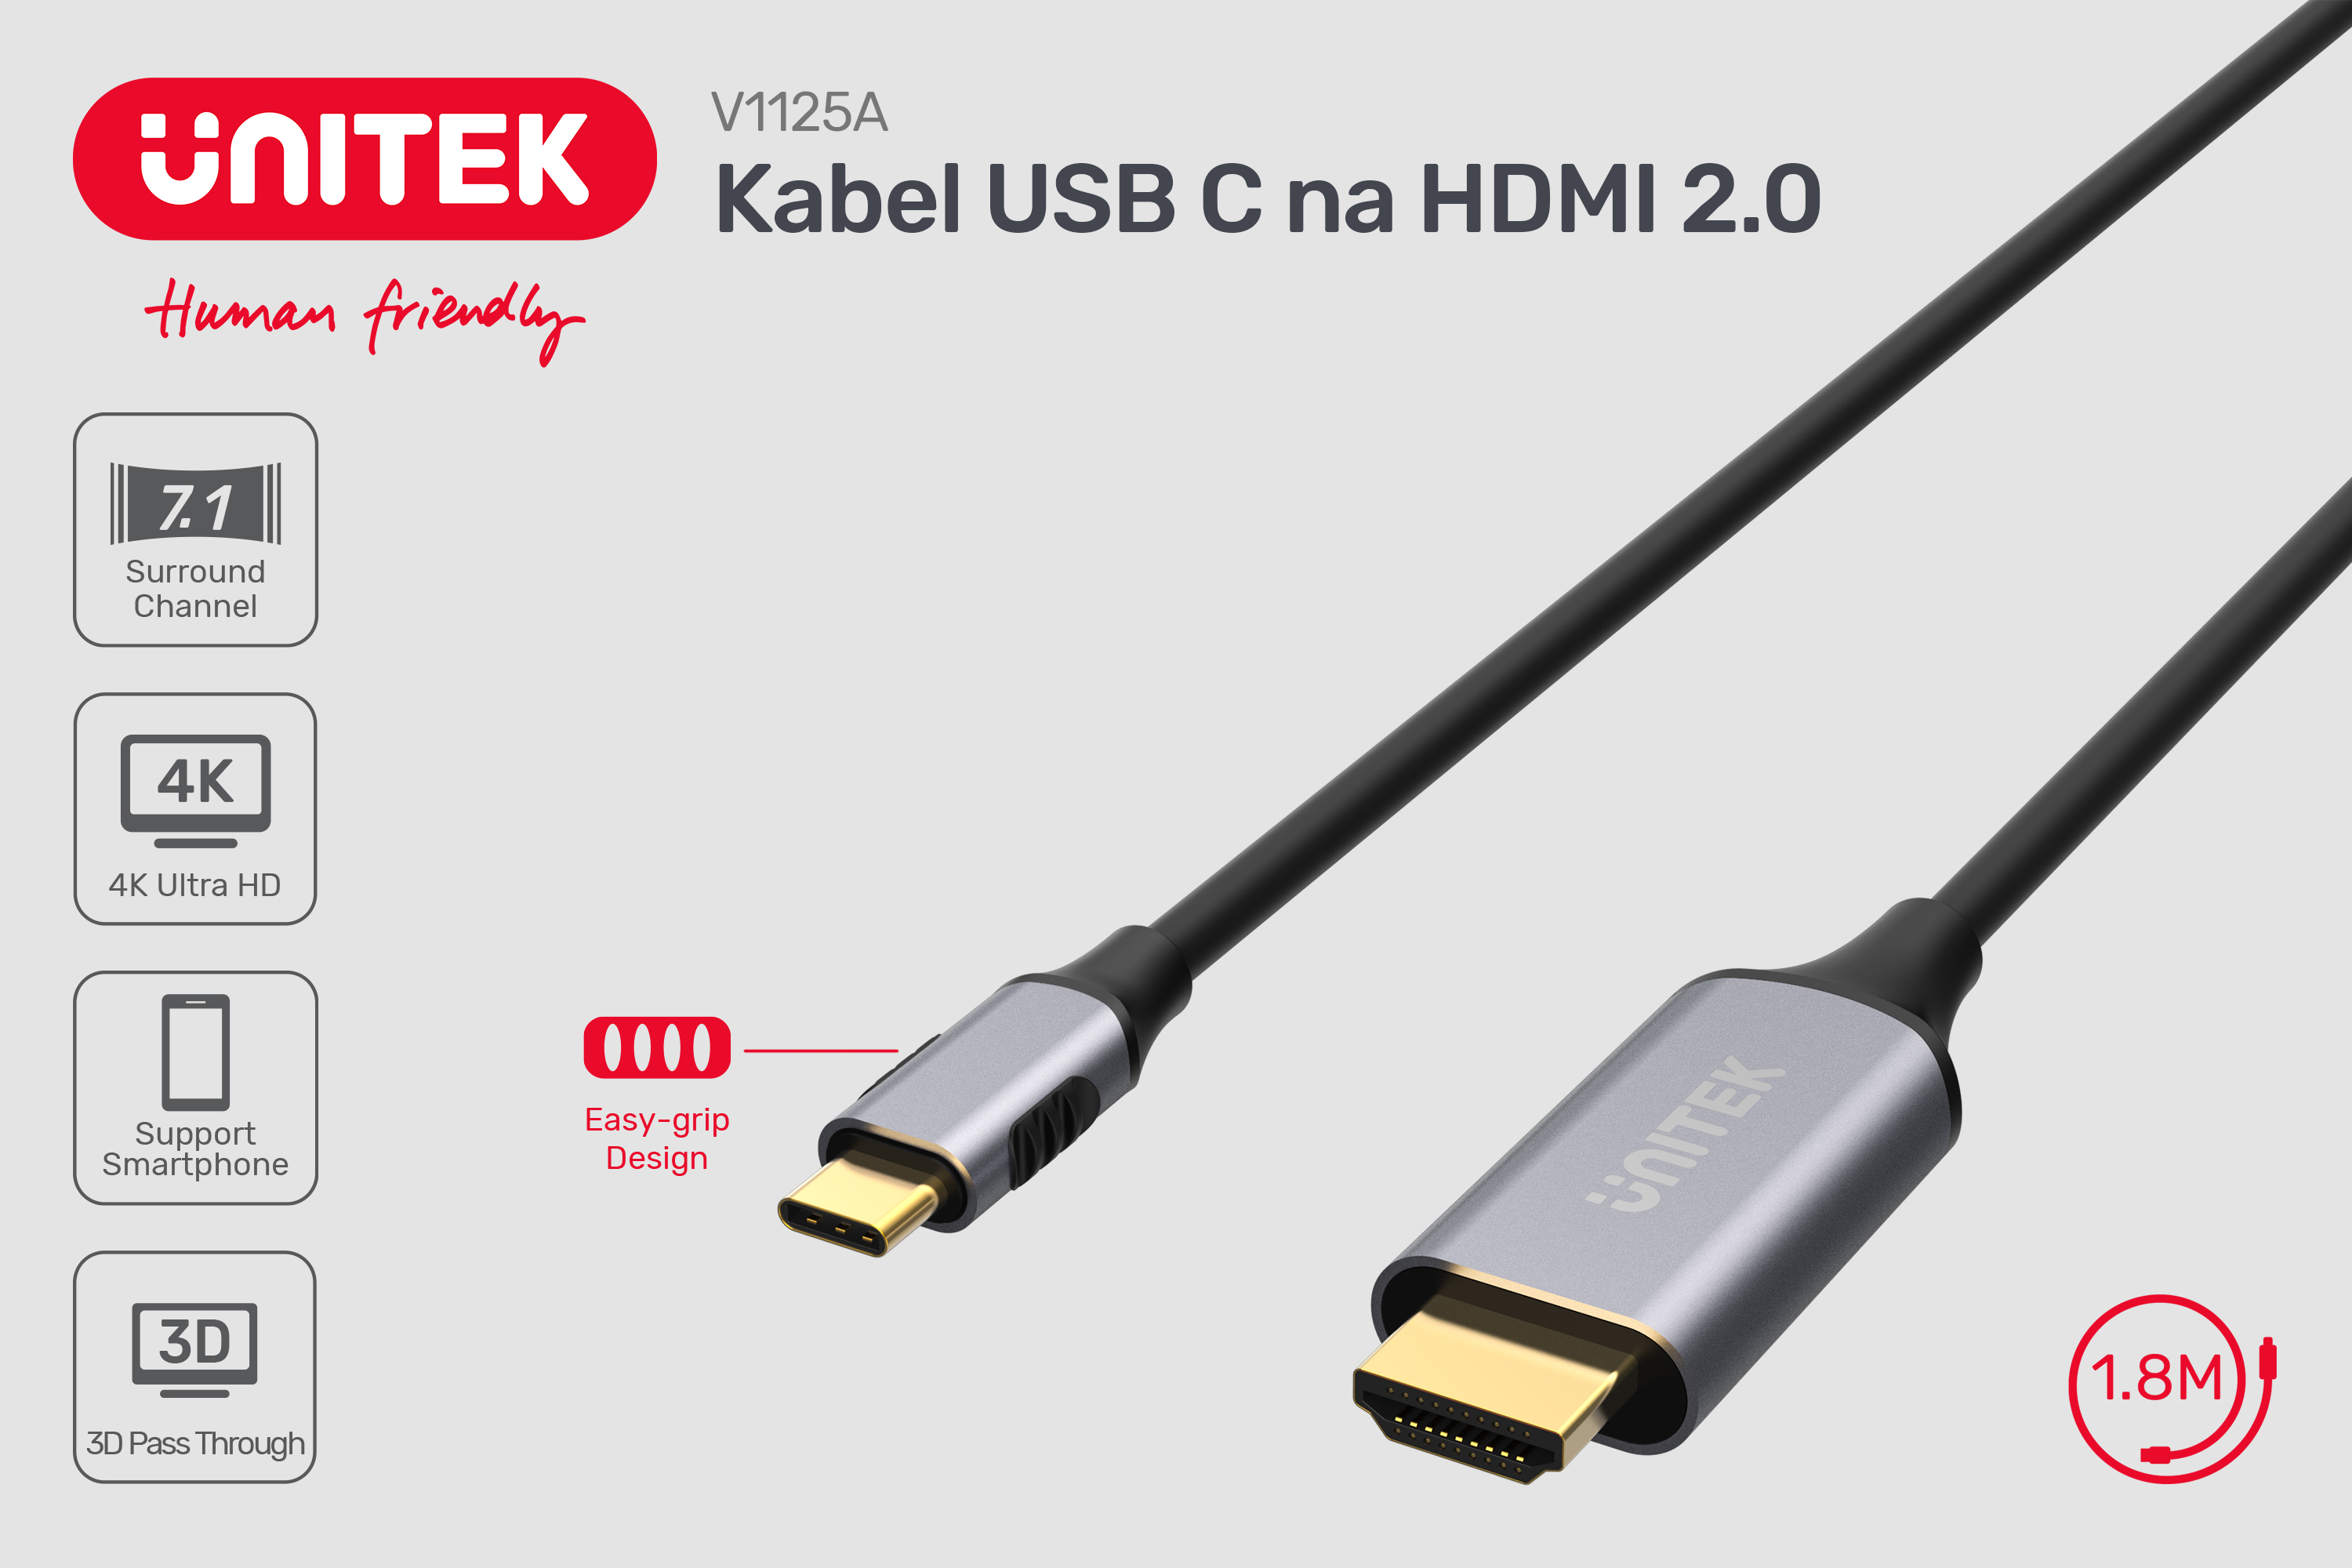 Kabel USB C na HDMI z 3D Pass Through